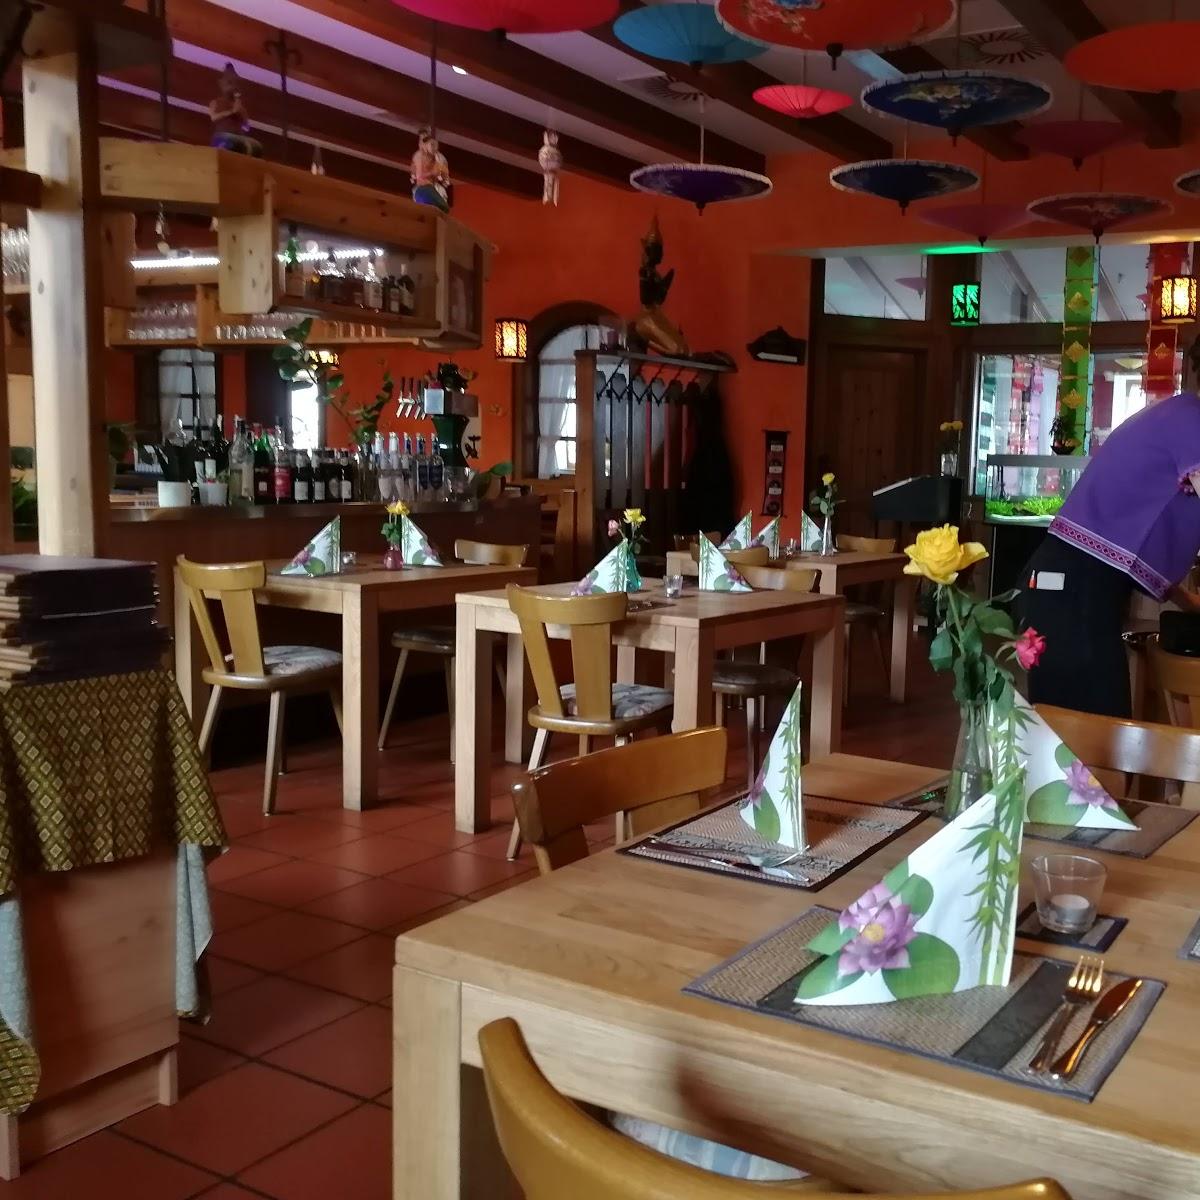 Restaurant "Thai Orchid" in Neumarkt in der Oberpfalz